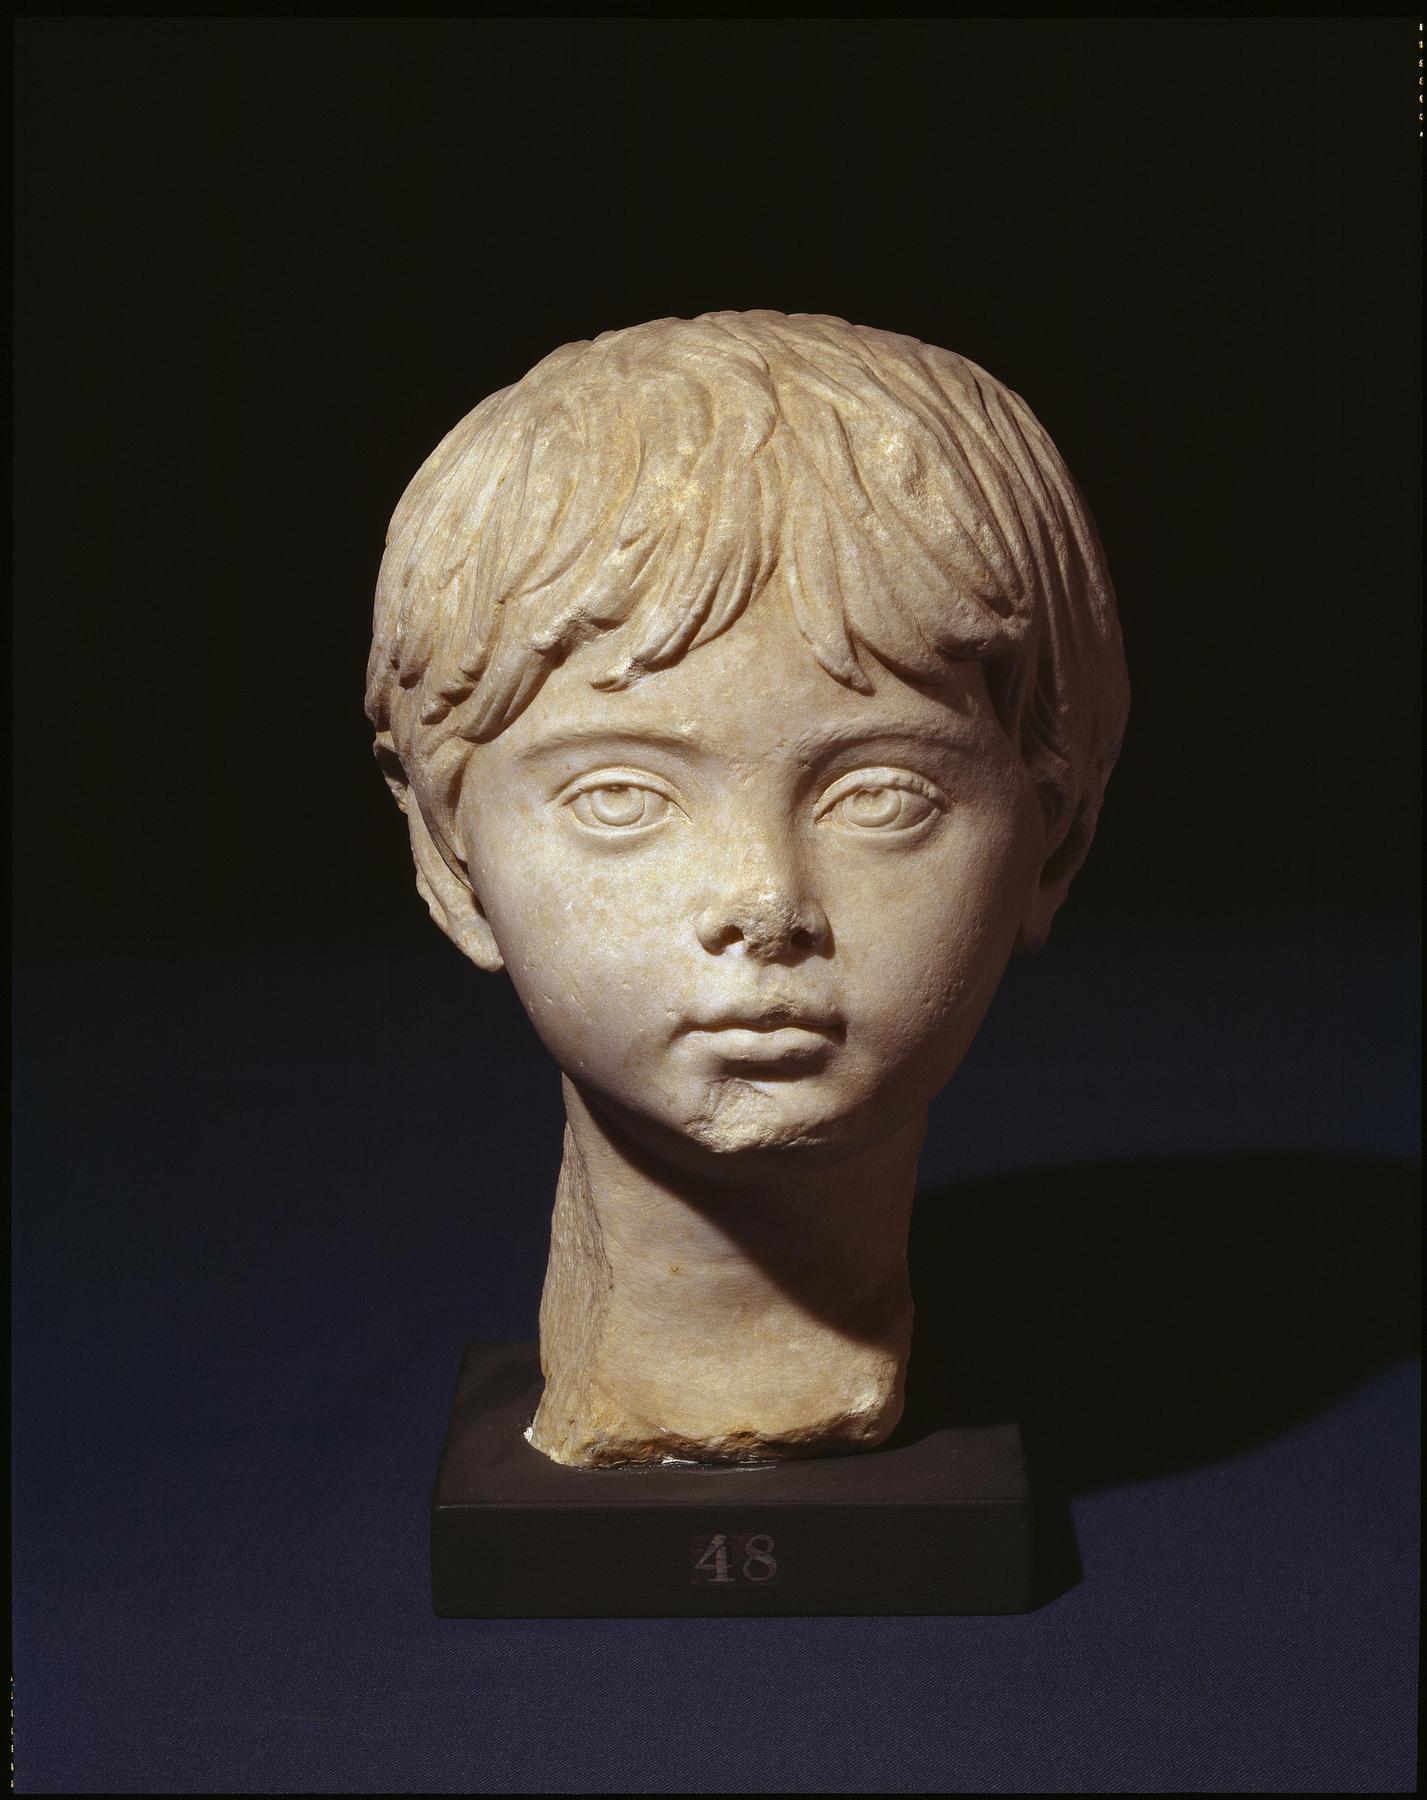 Portrait sculpture of a young boy, H1448